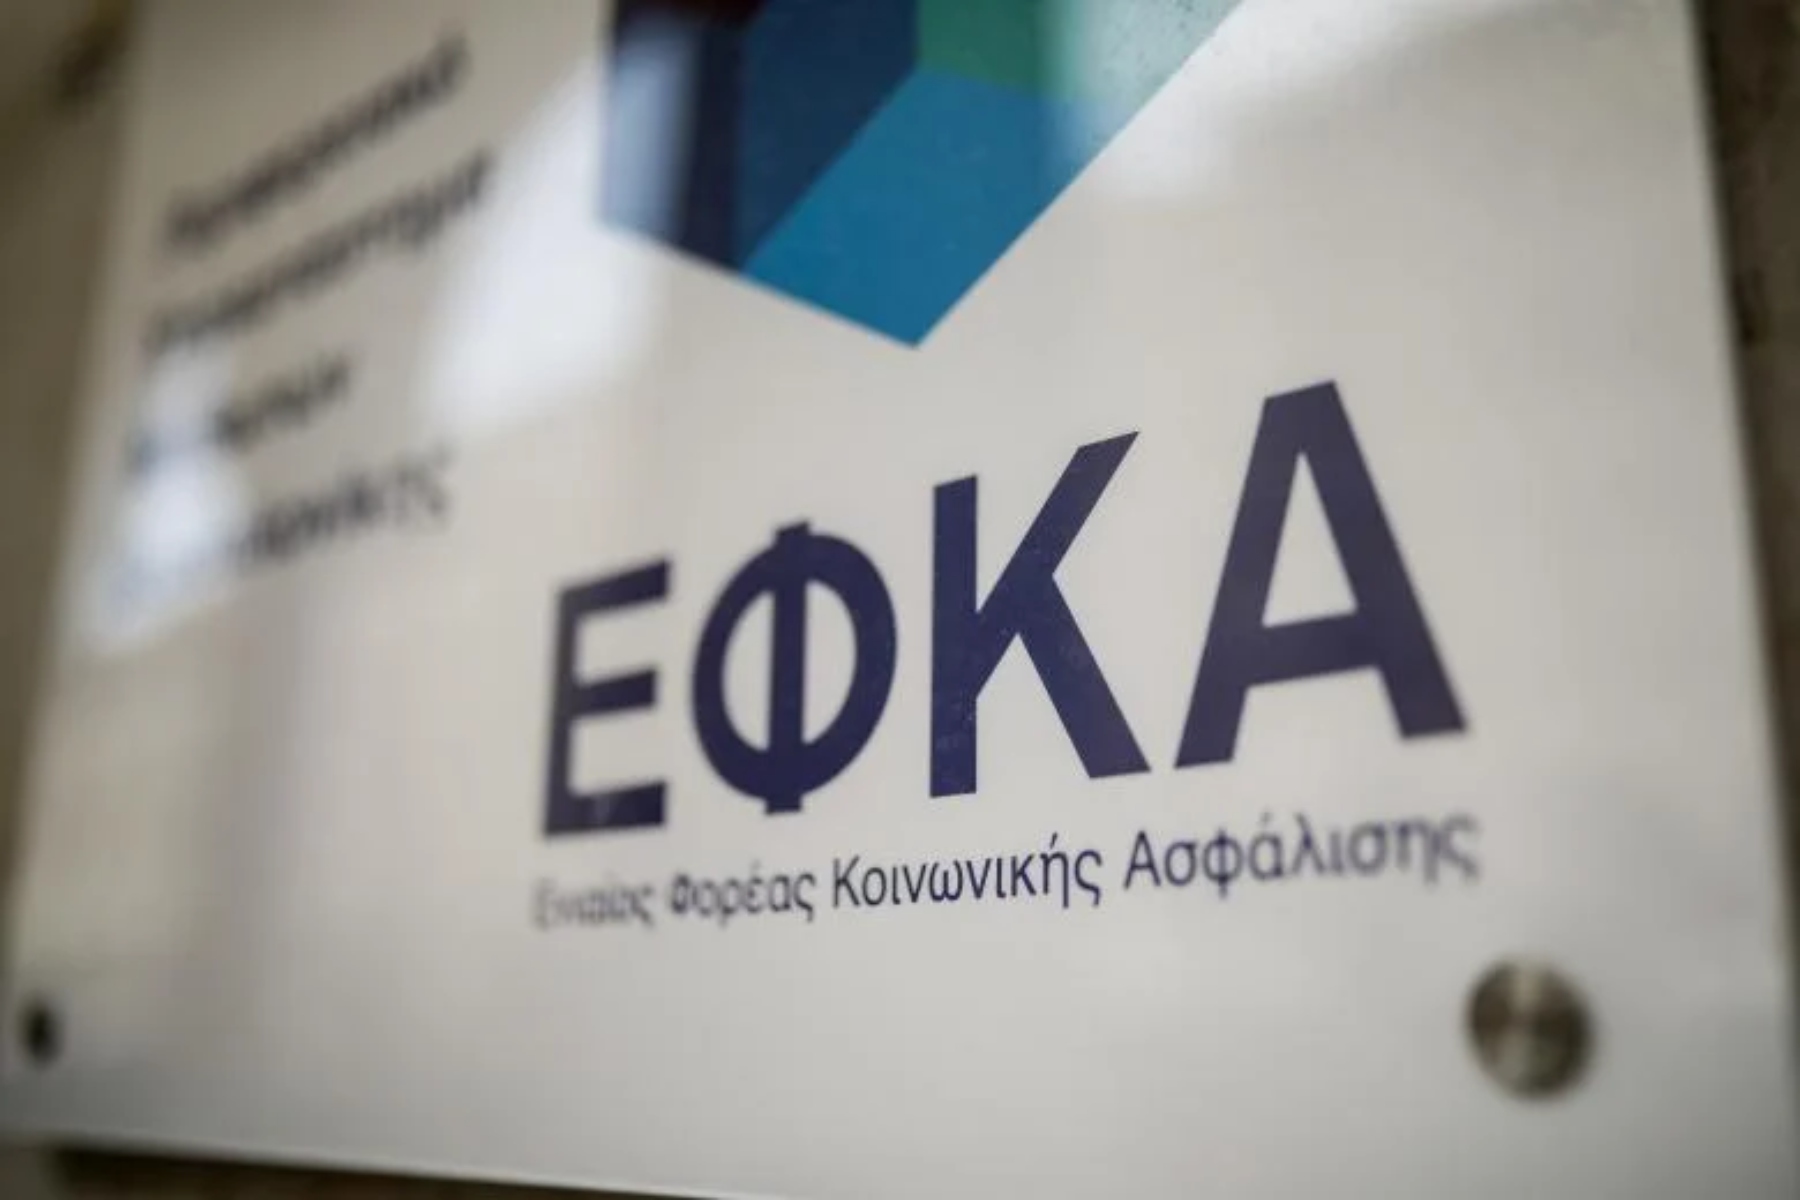 ΕΦΚΑ: Νέα ασφαλιστική ικανότητα με μικρές οφειλές έως 100 ευρώ για επαγγελματίες